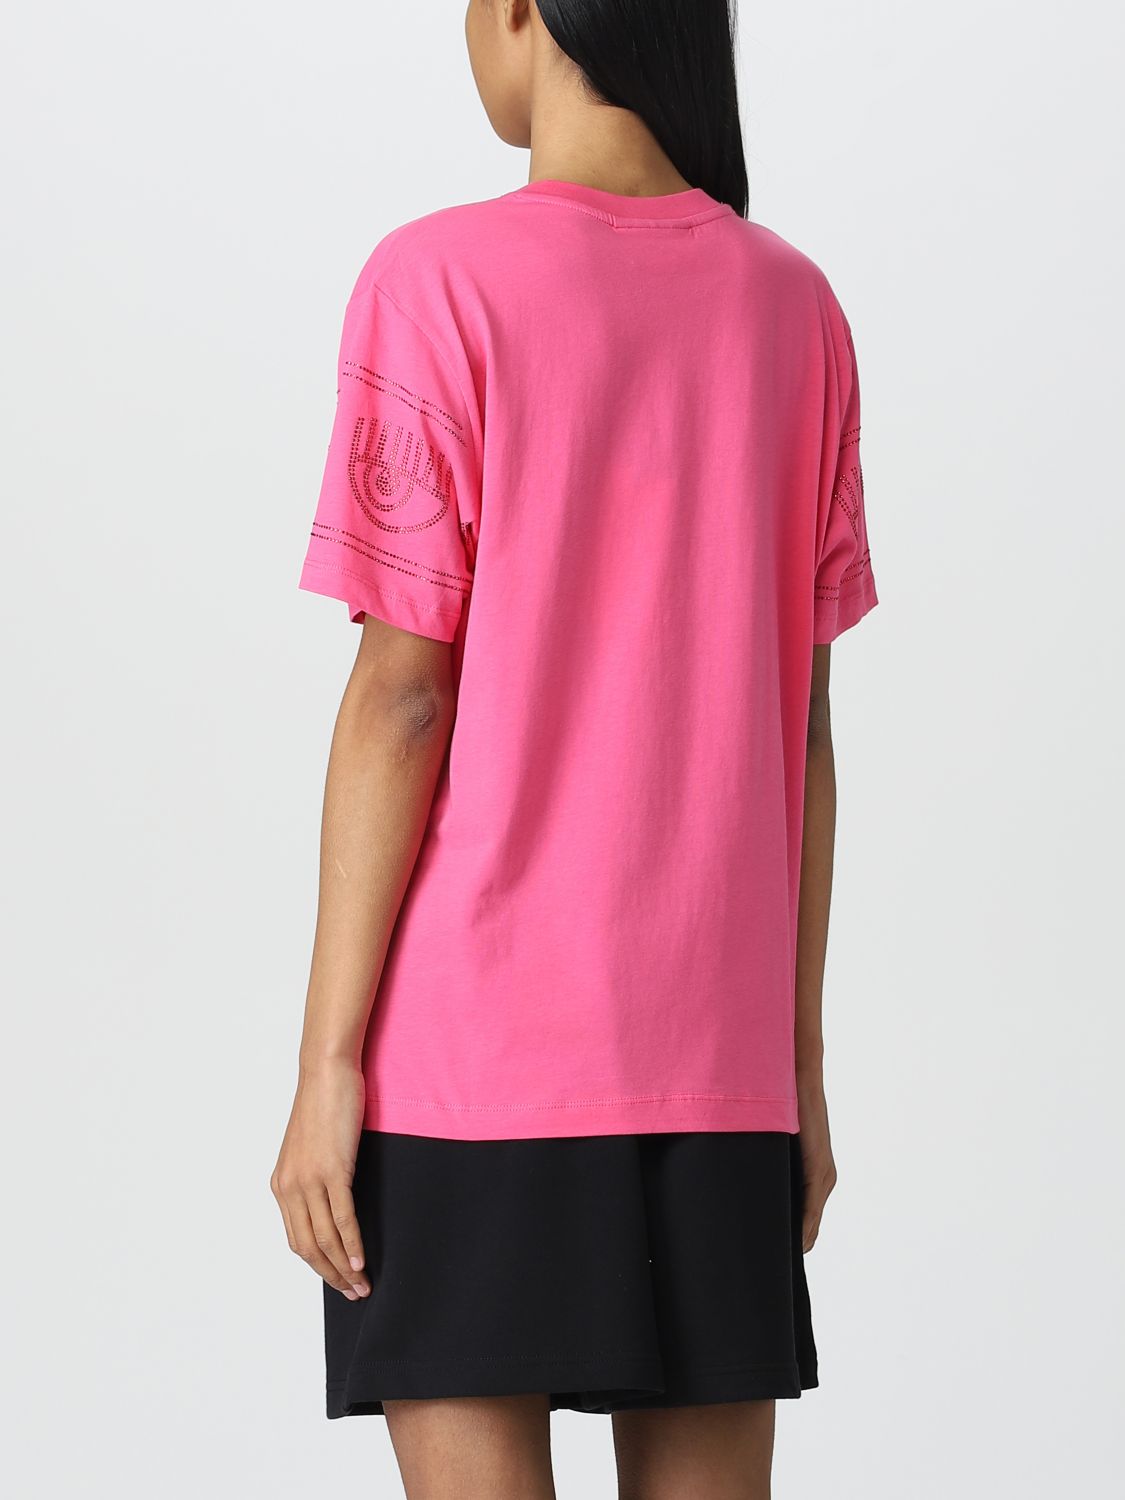 T-shirt Chiara Ferragni: T-shirt Chiara Ferragni in cotone con strass applicati rosa 2